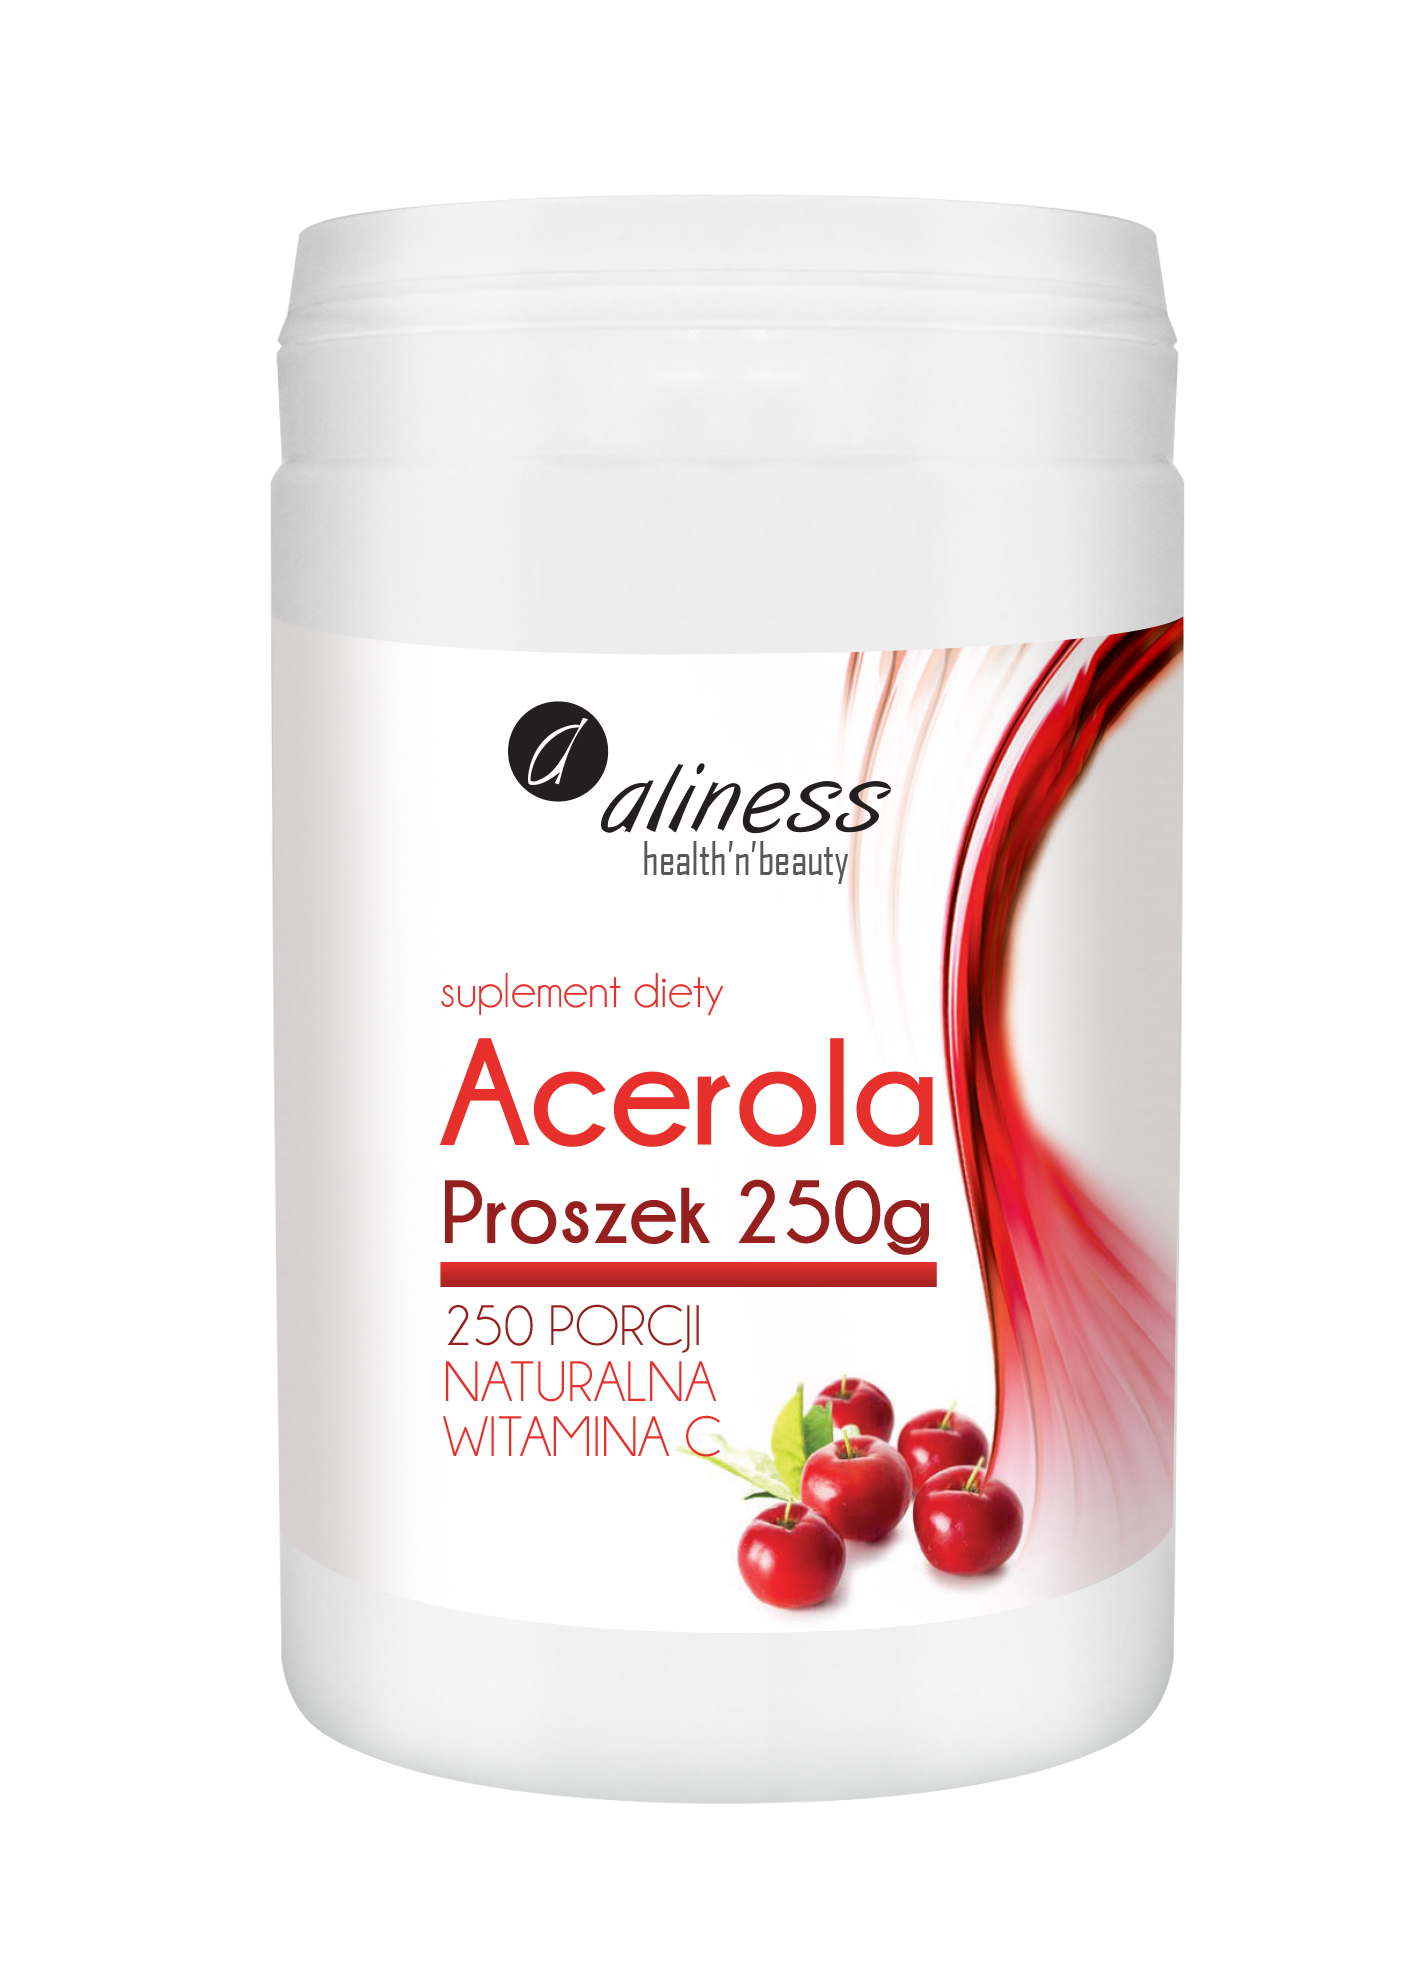 Aliness Acerola Witamina C proszek 250g - suplement diety